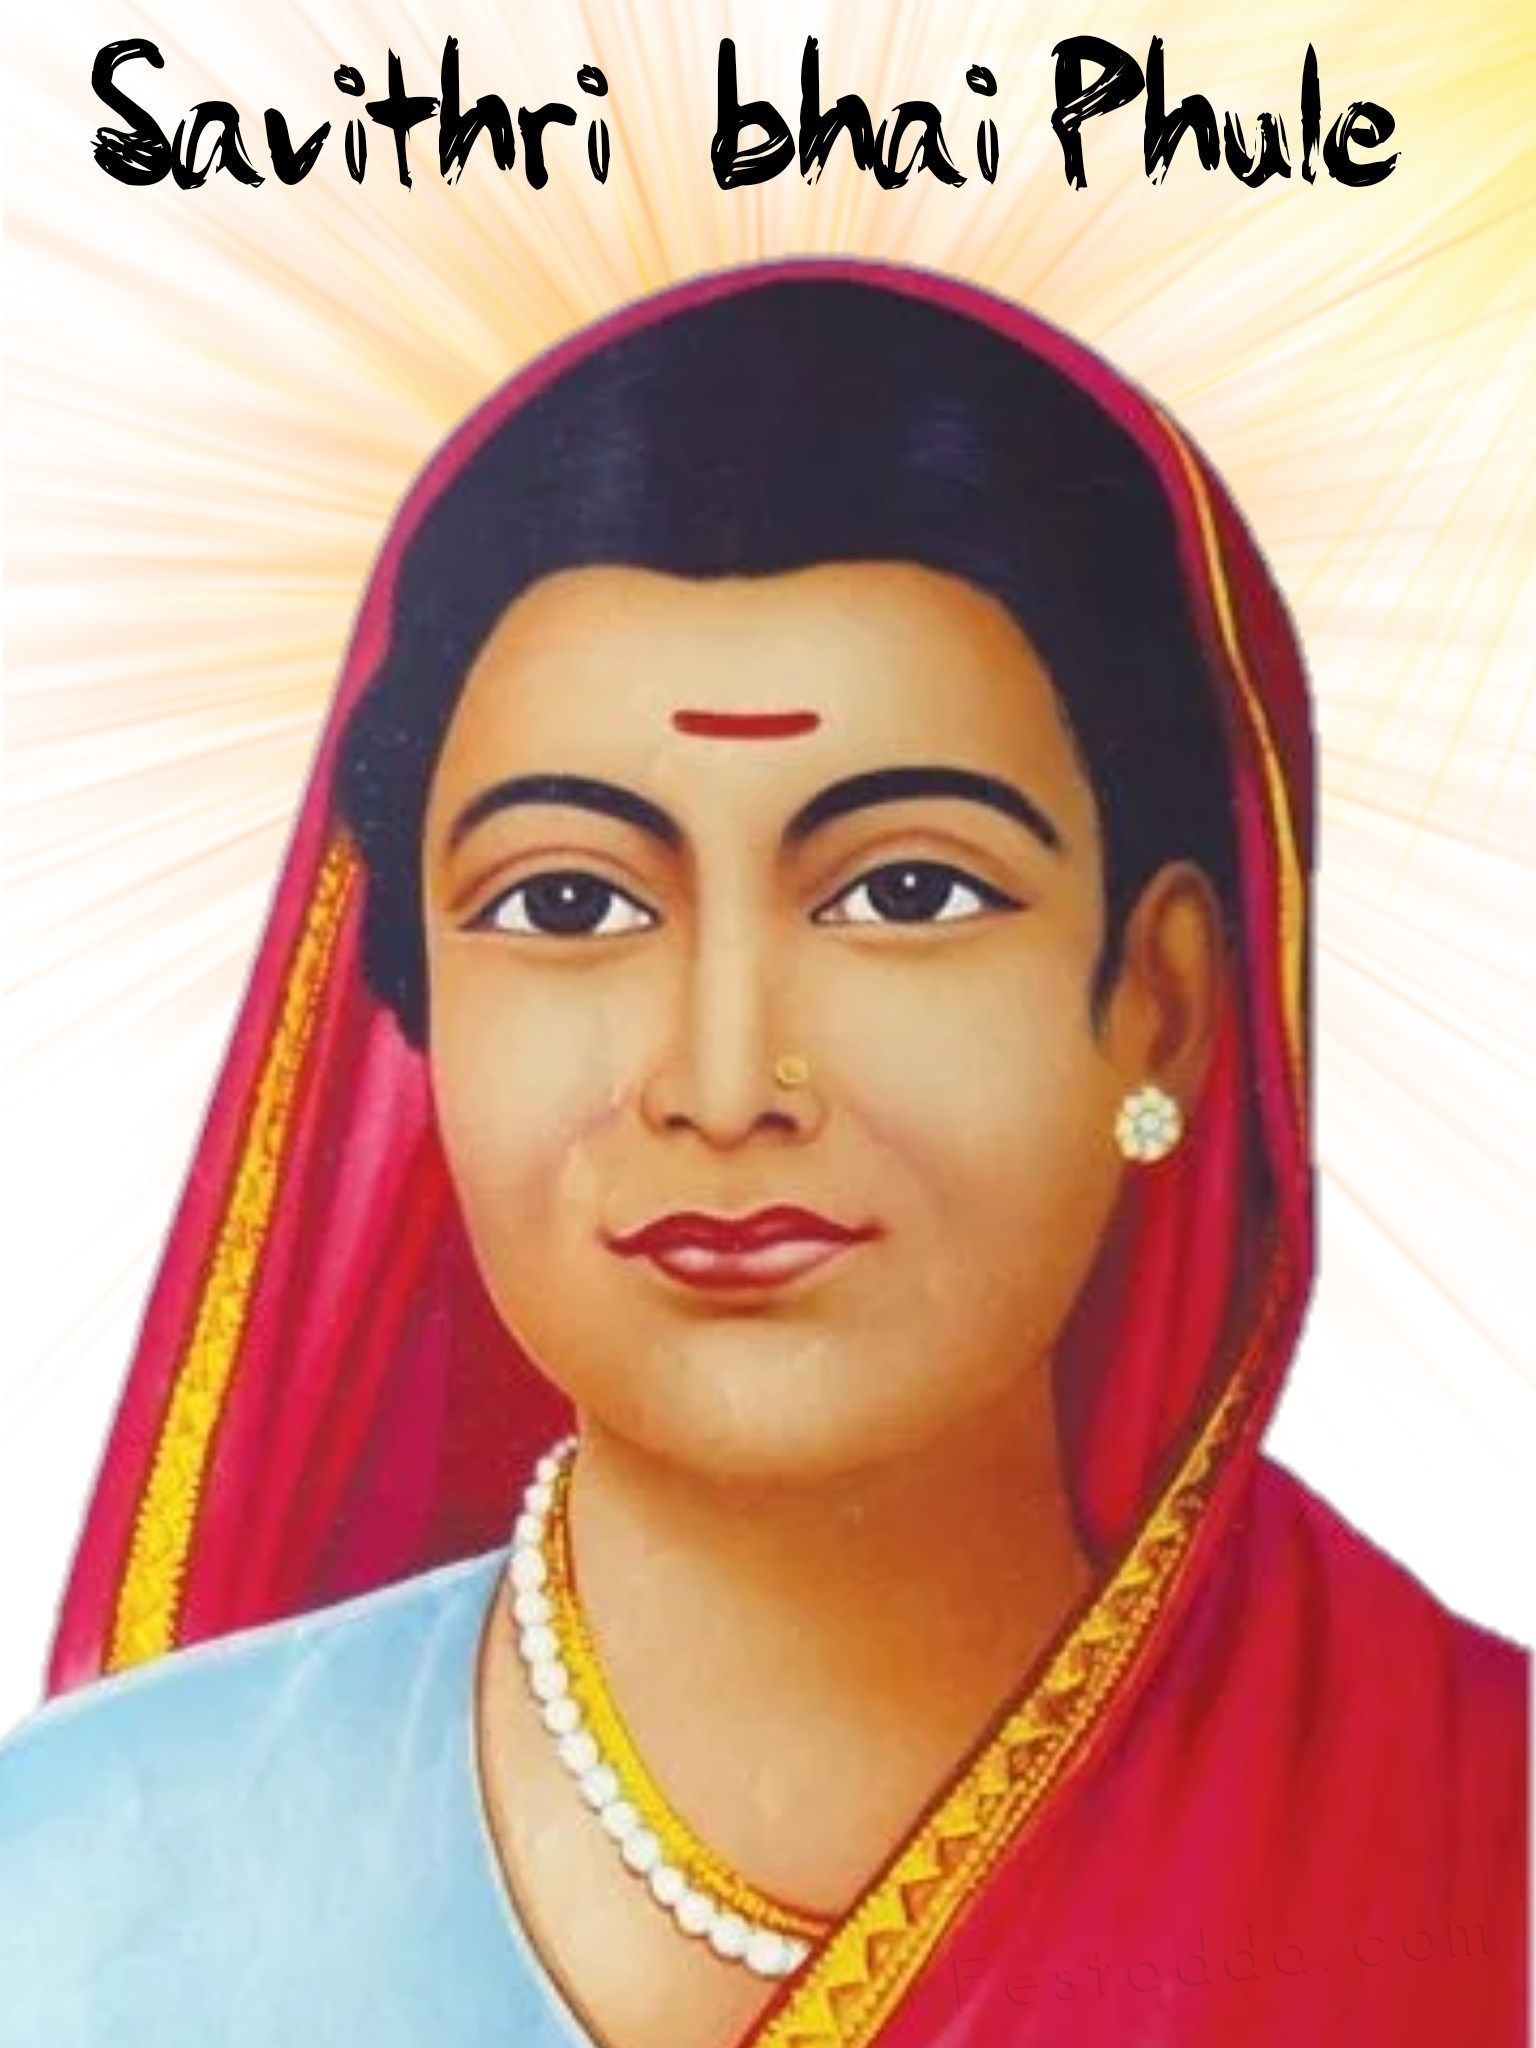 सावित्री बाई फुले, भारत की प्रथम महिला शिक्षिका: जीवनी और शिक्षा और महिला सशक्तिकरण में योगदान 